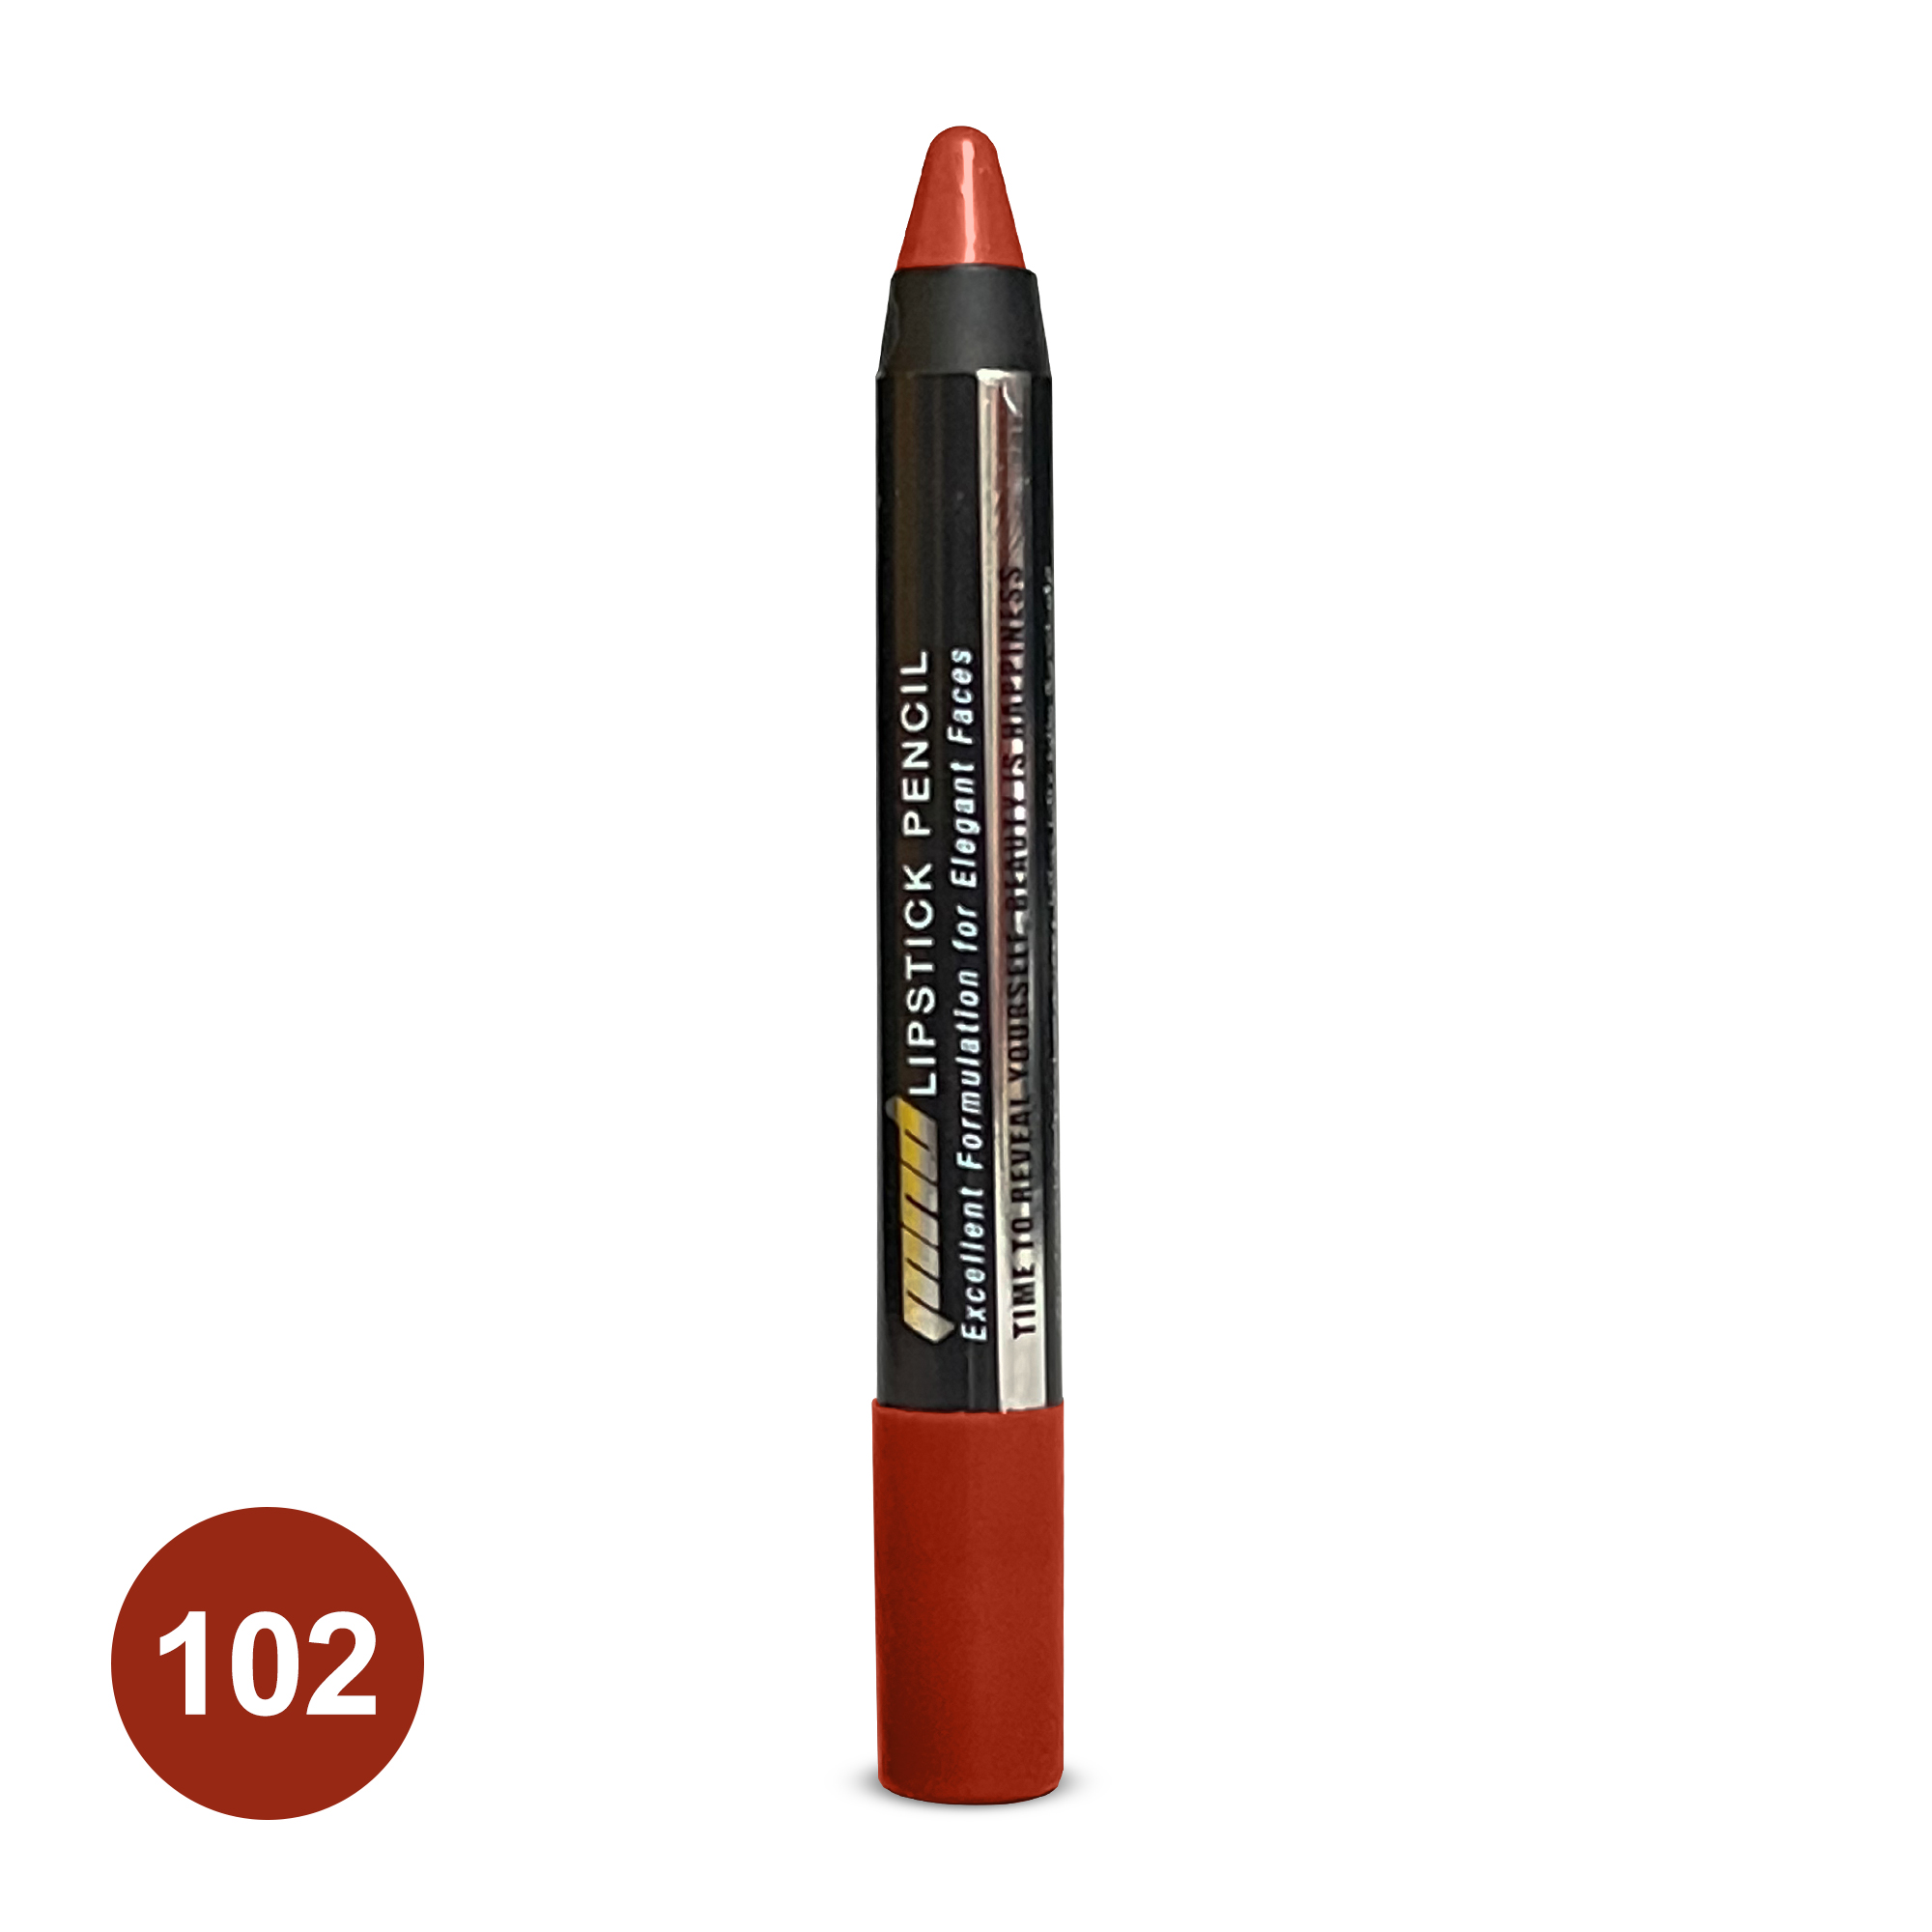 رژلب مدادی شماره 102 | بازاریابی شبکه ای 